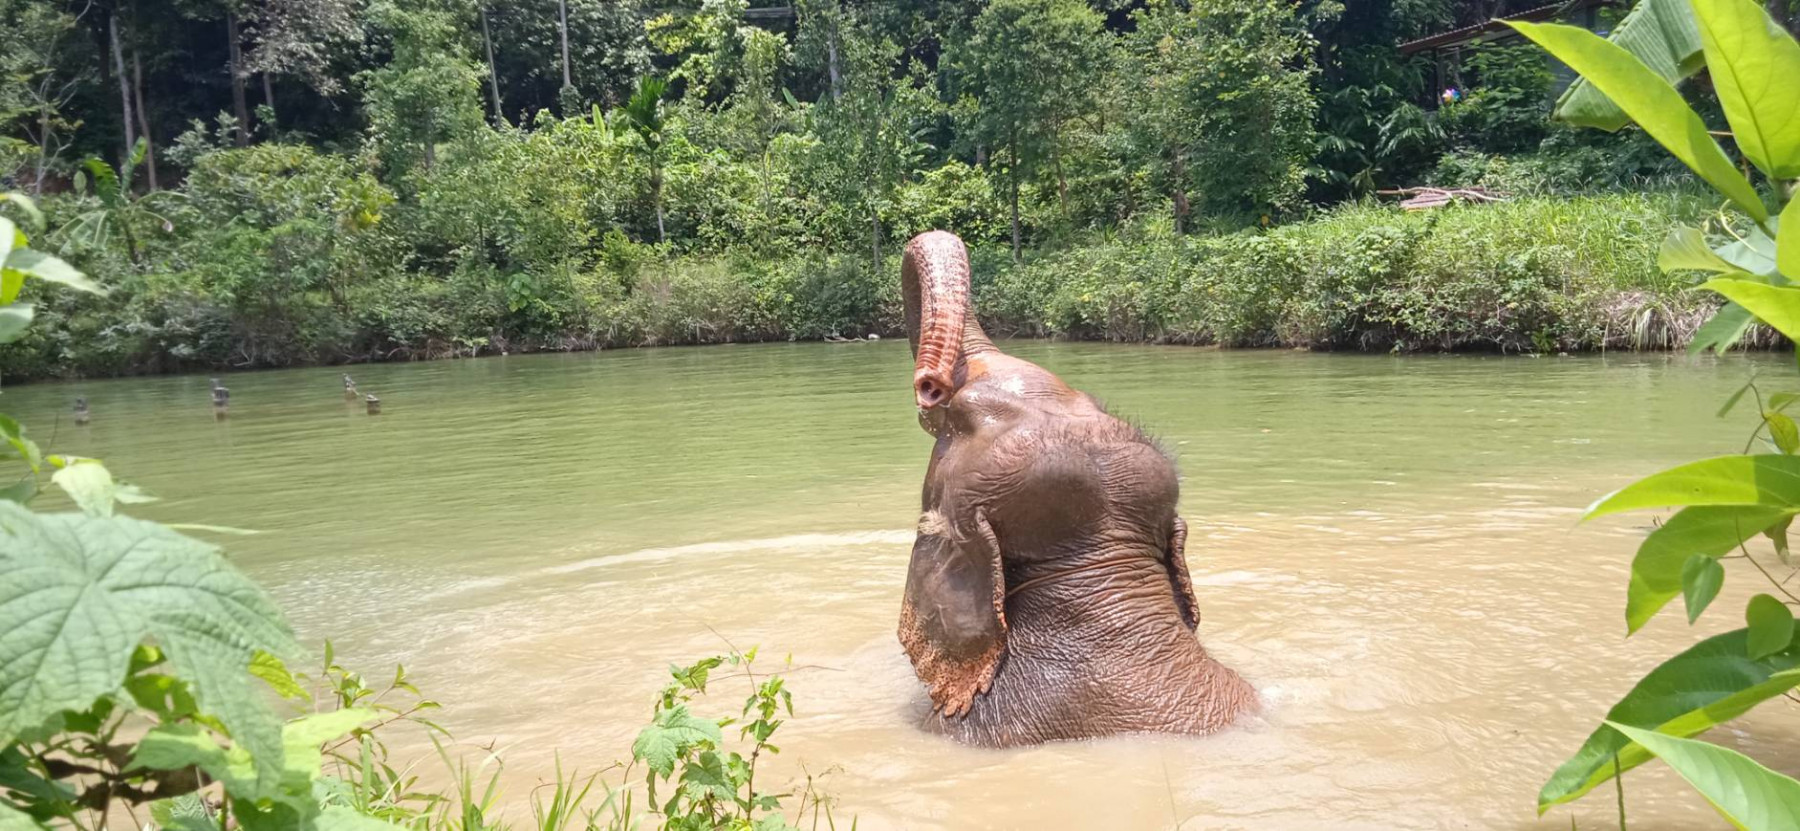 An elephant bathing in water